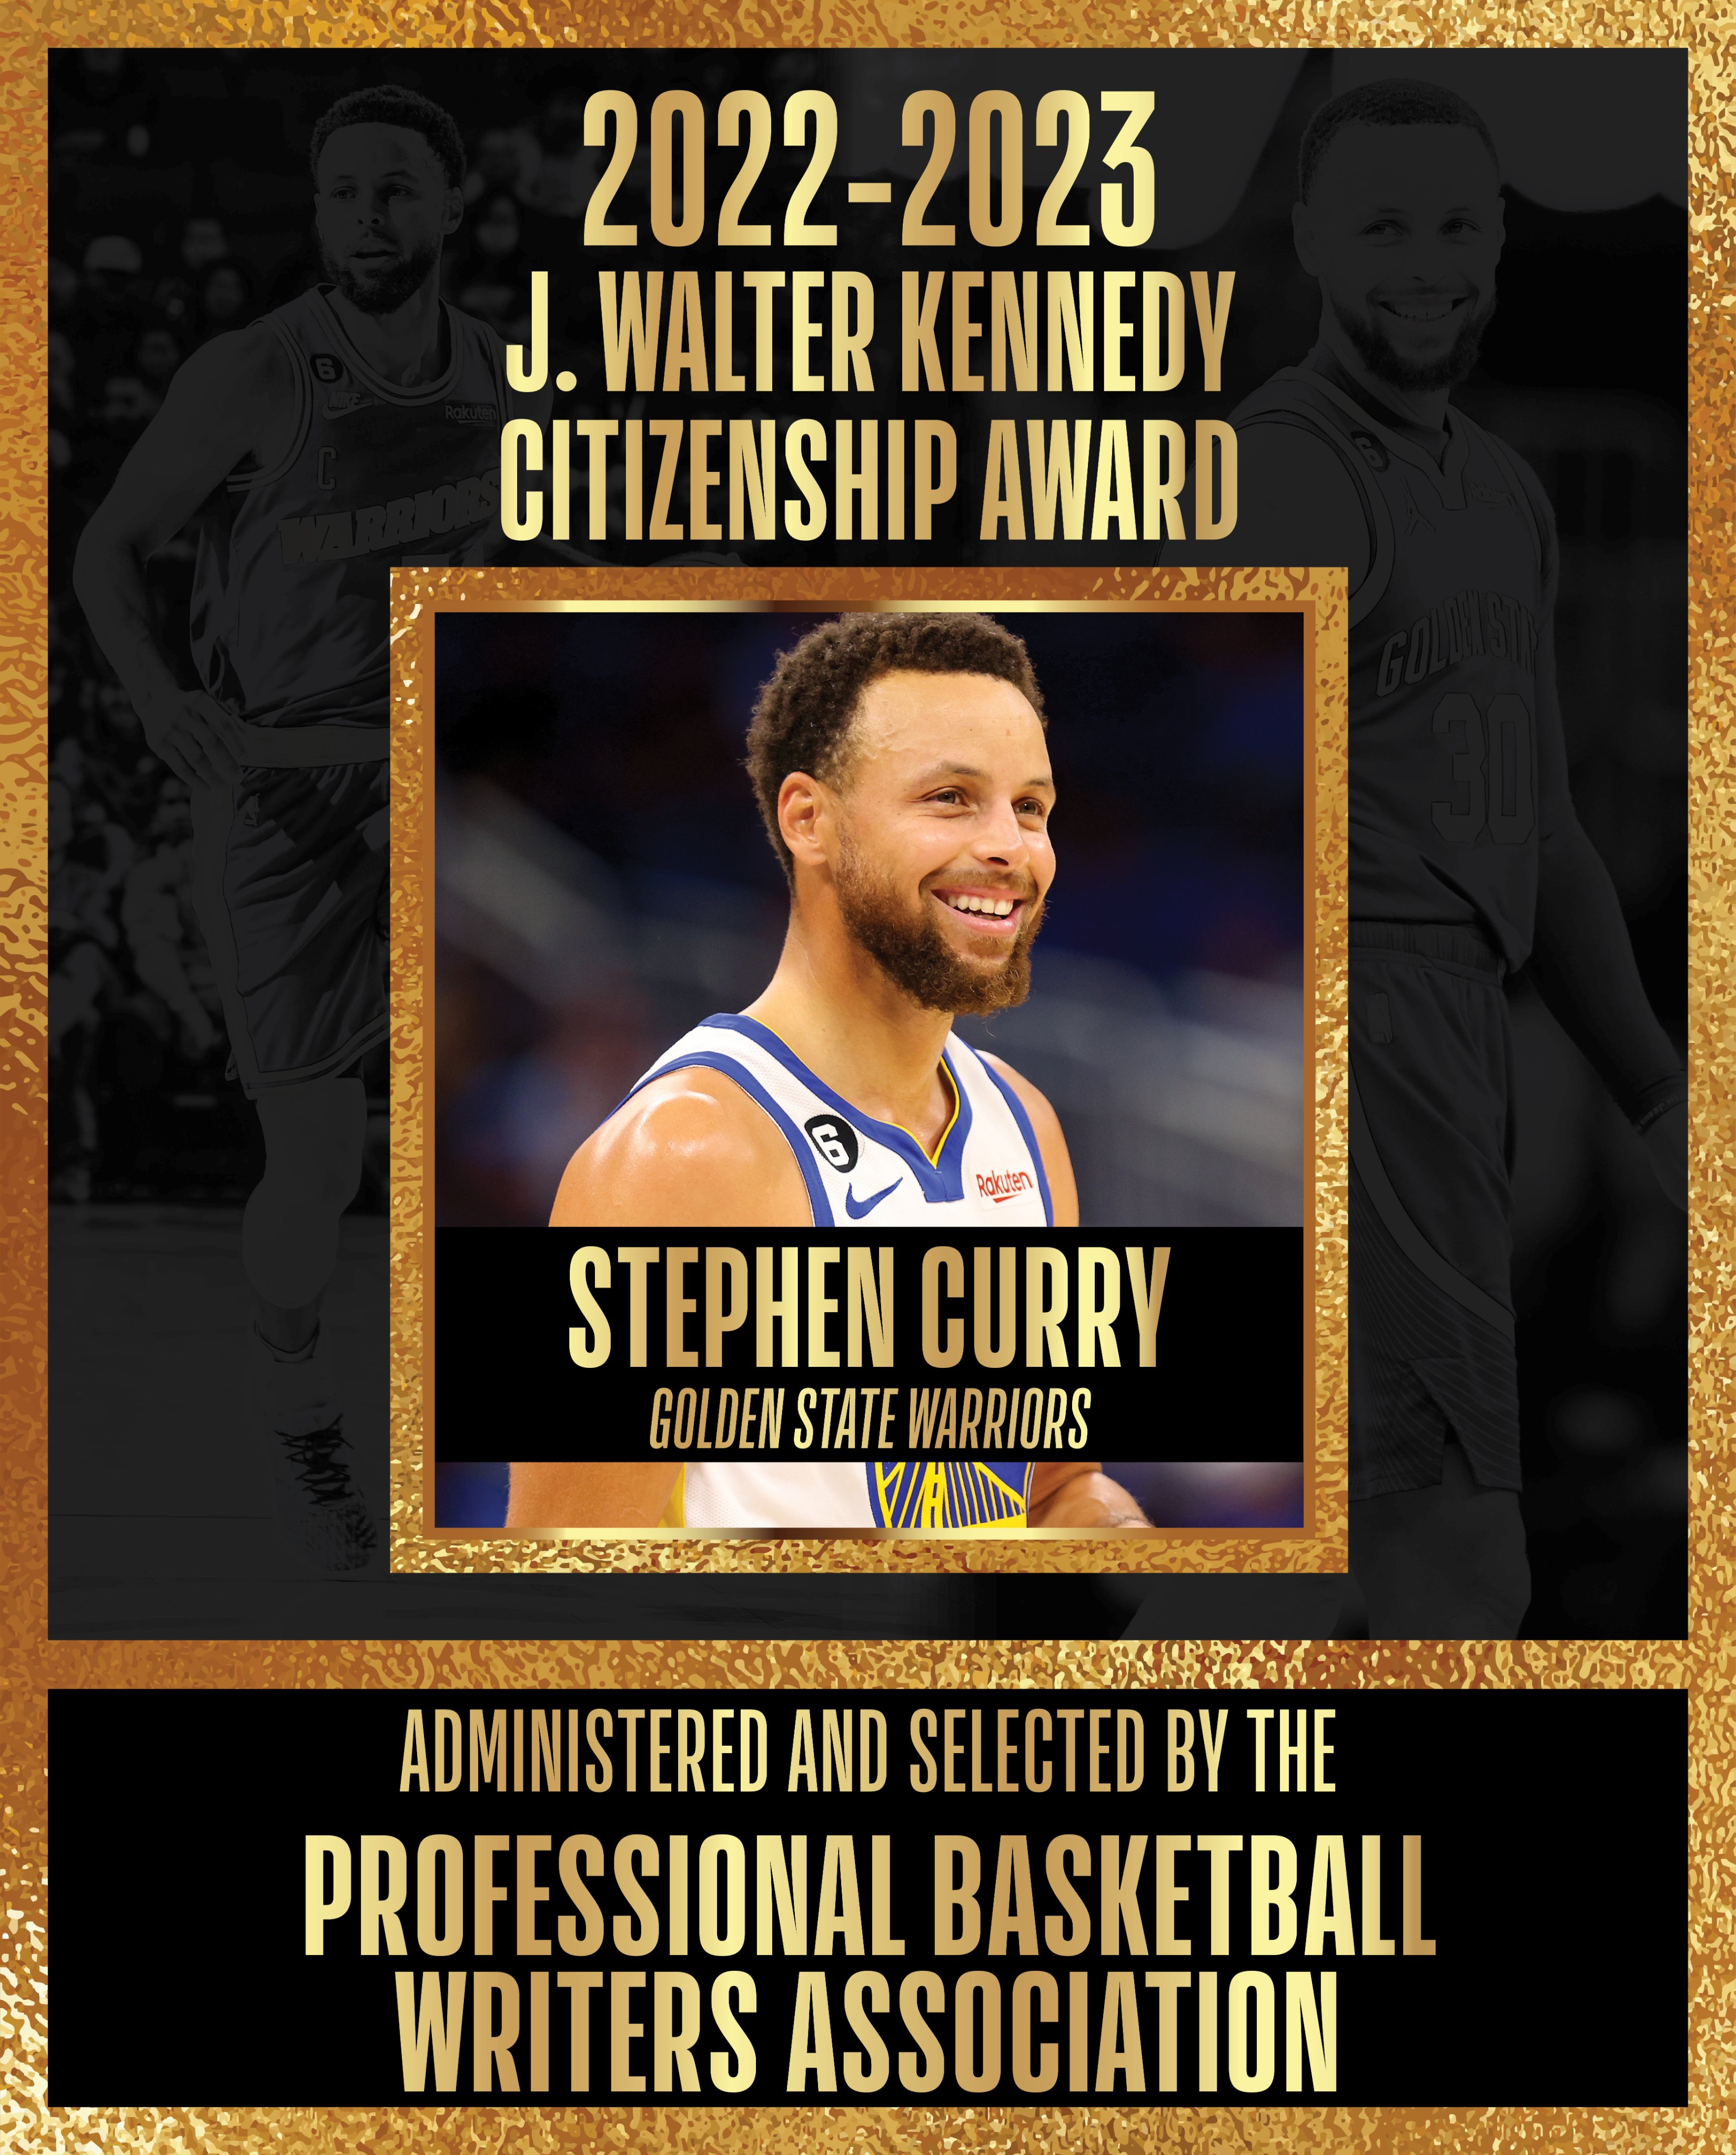 Warriors' Stephen Curry wins 2023 J. Walter Kennedy Citizenship Award 